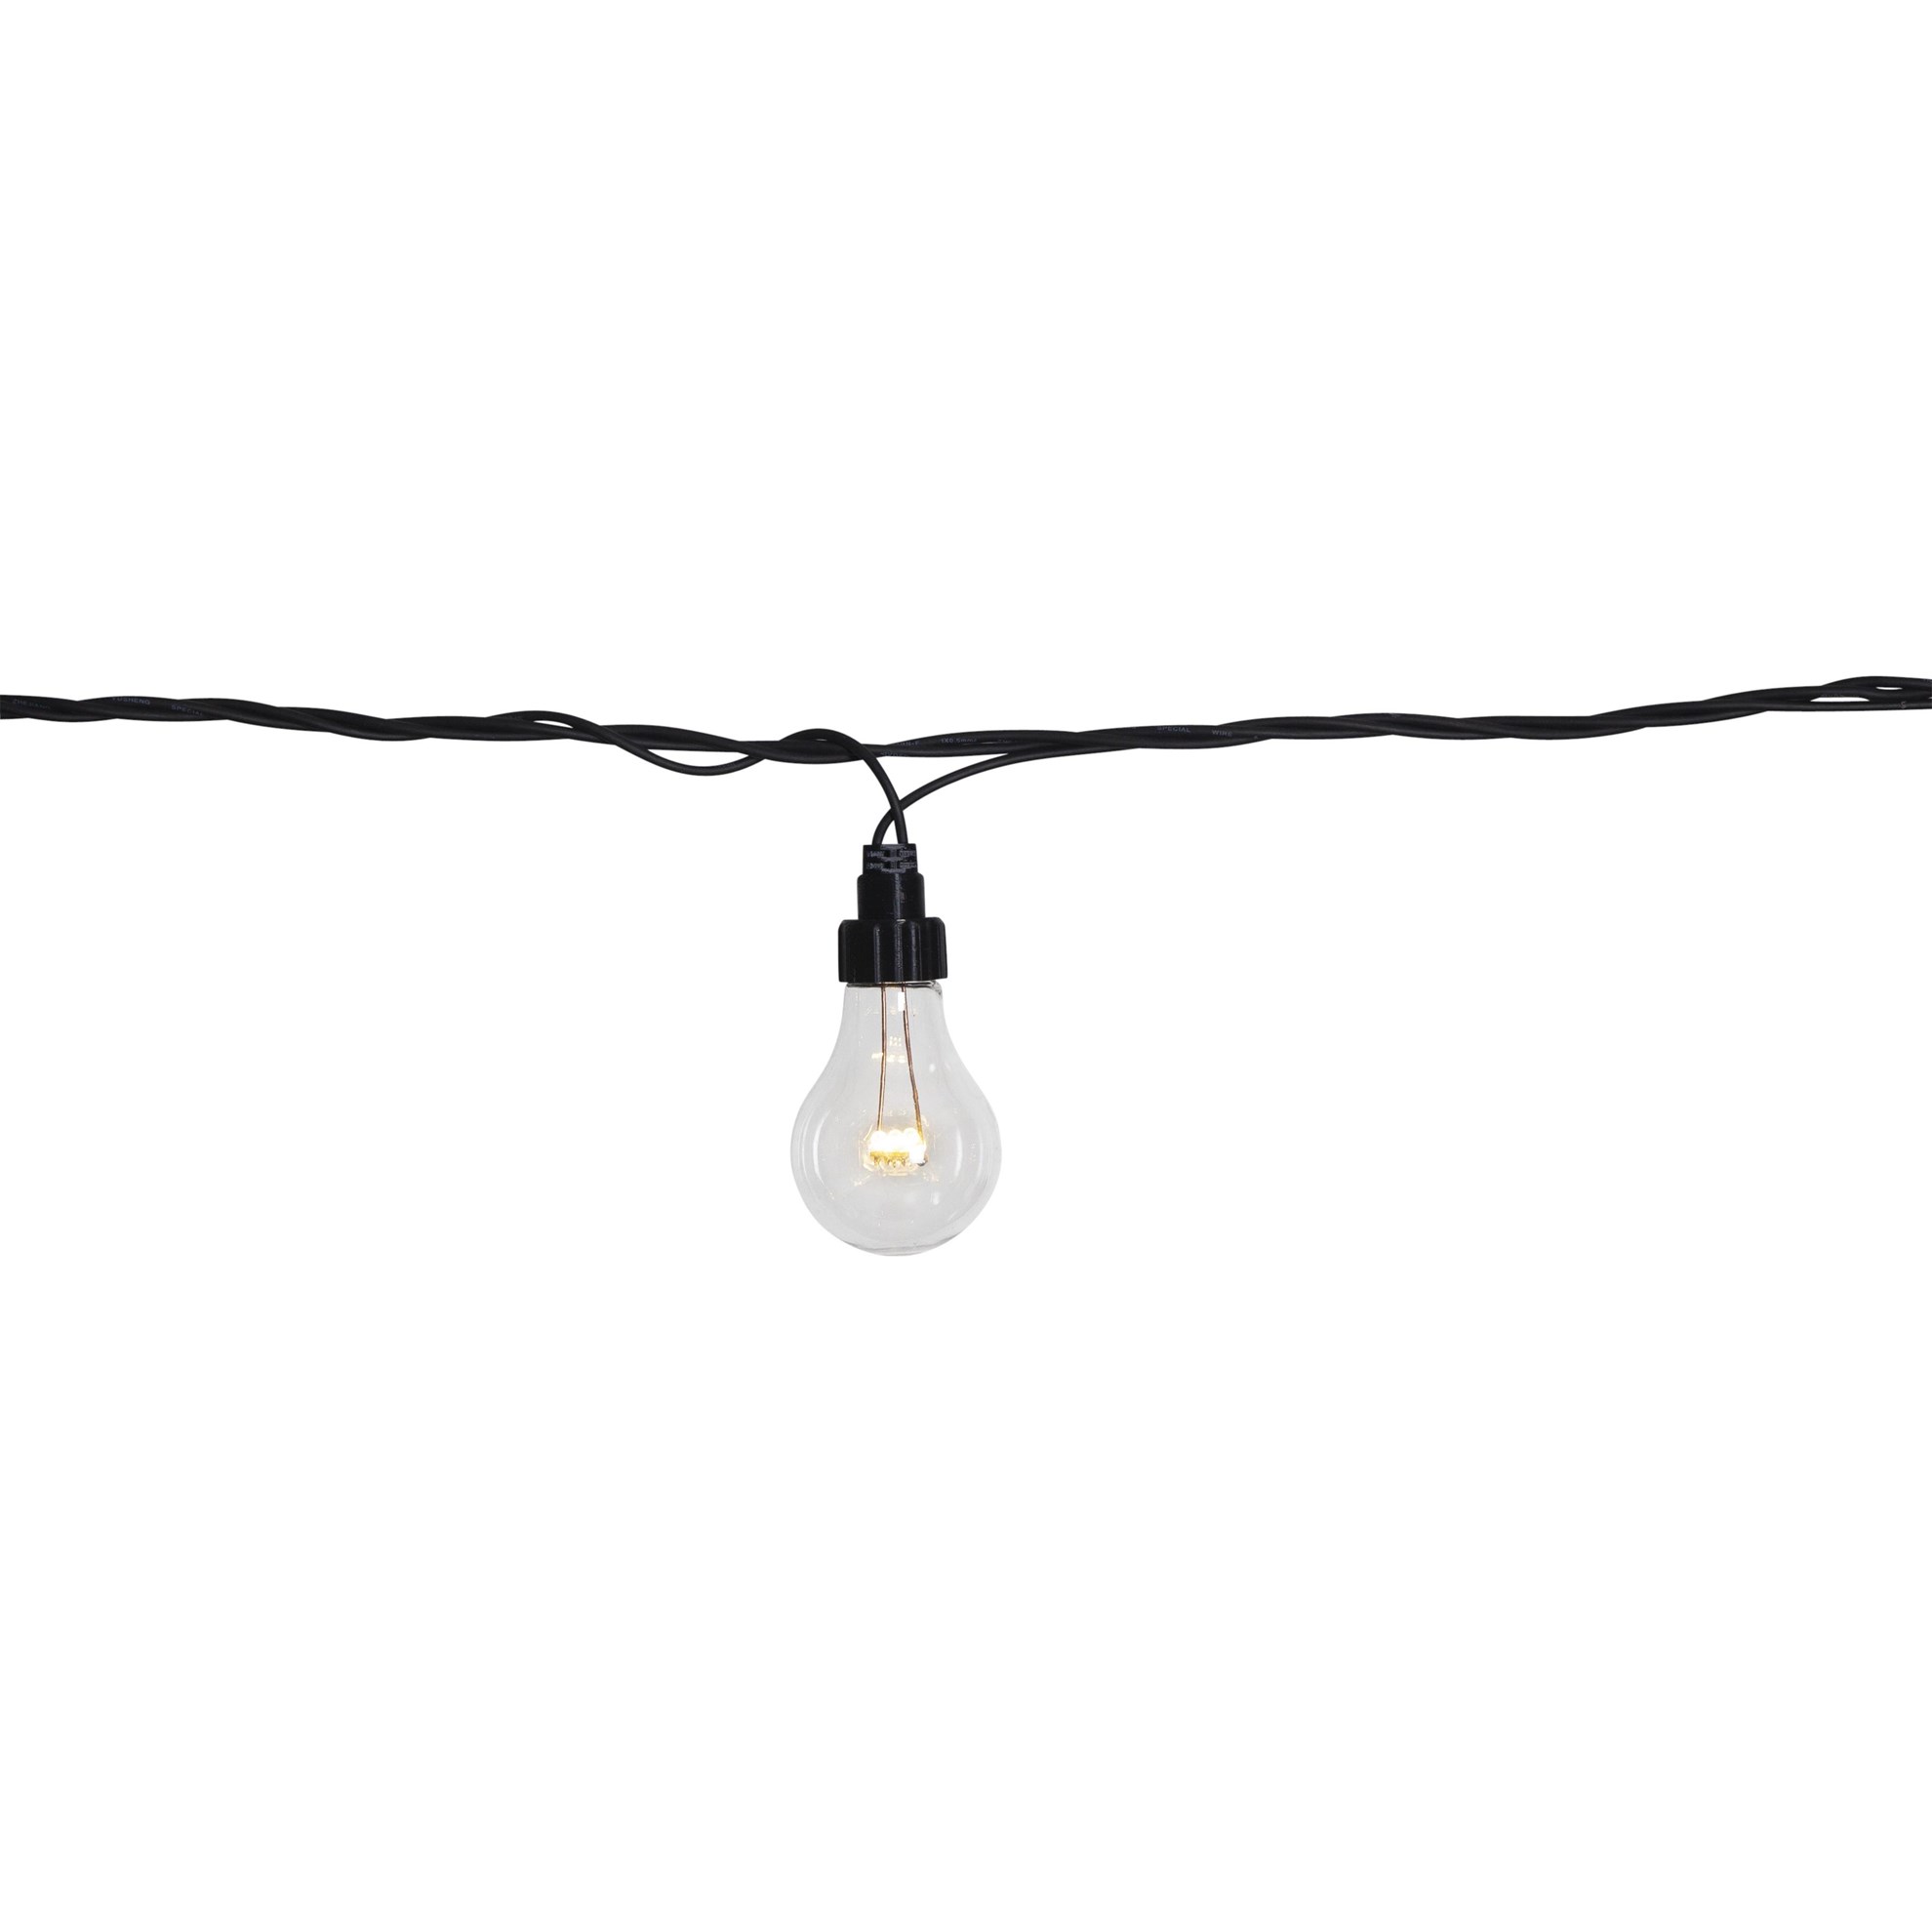 Venkovní světelný řetěz System LED, ca. 500 cm, 10x LED, 50 cm od sebe_0